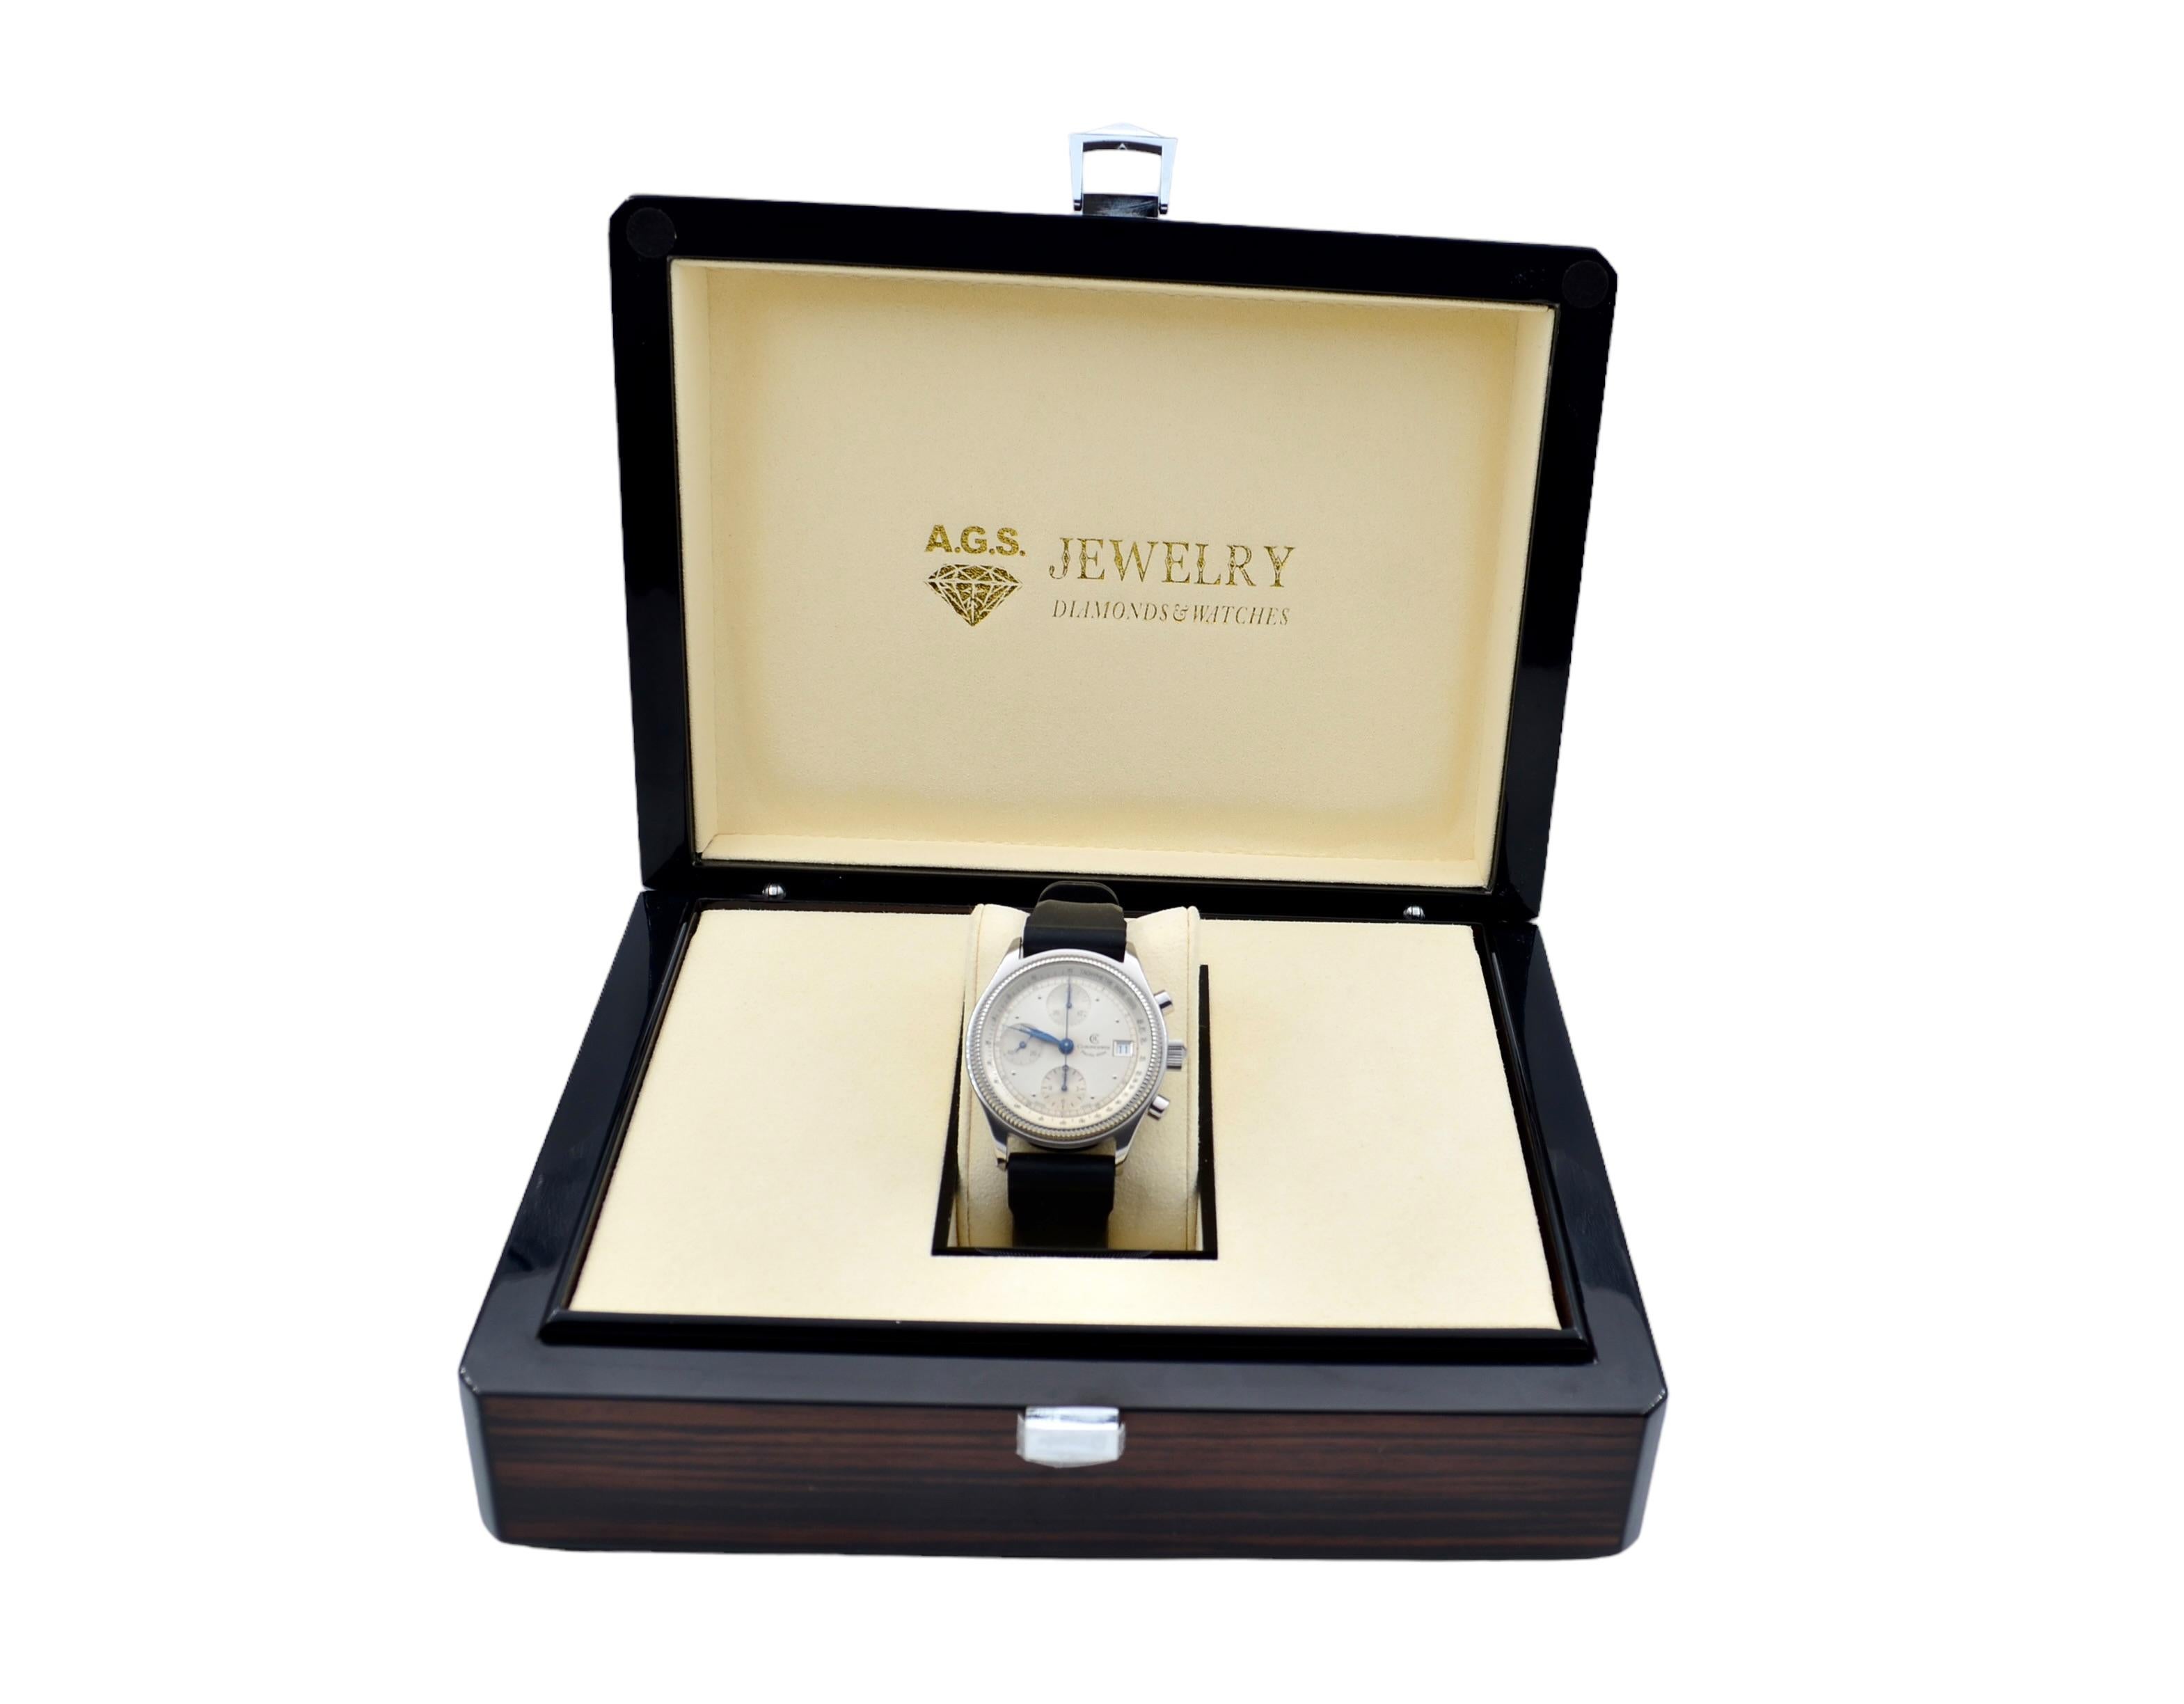 Die Uhr ist in einem sehr guten Zustand, sie ist professionell poliert und funktioniert gut. Die Gesamtlänge des Armbands (Gehäuse+Armband) beträgt zwischen 15,5-21,5 cm. Es hat Kratzer auf dem Glas. Das Kautschukband ist nicht original. Die Uhr